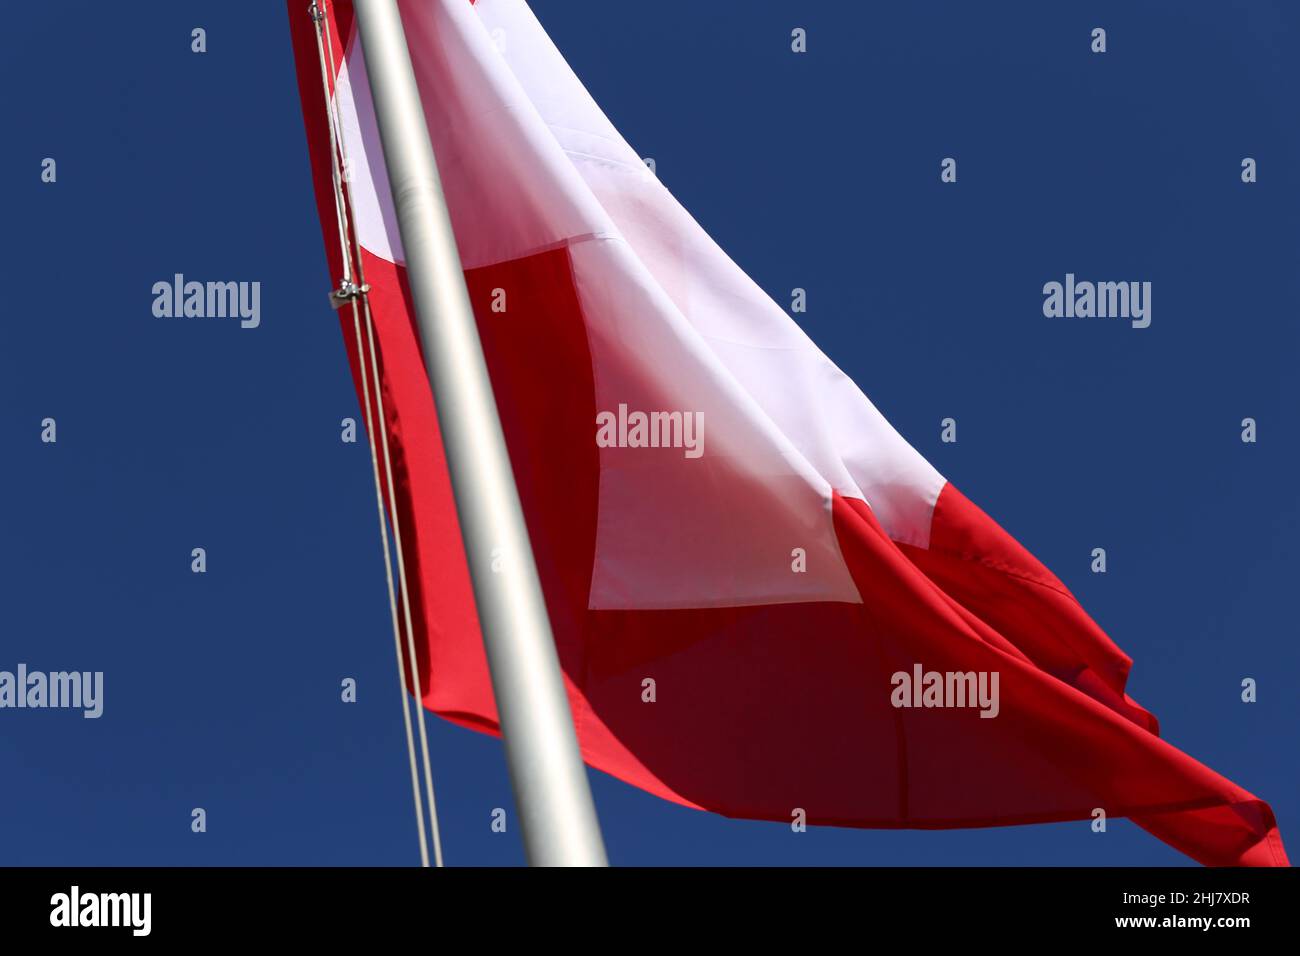 Le drapeau de la Suisse pendant une journée venteuse. Gros plan du drapeau rouge et blanc avec le ciel bleu en arrière-plan. Symbole de l'indépendance et de la nationalité. Banque D'Images